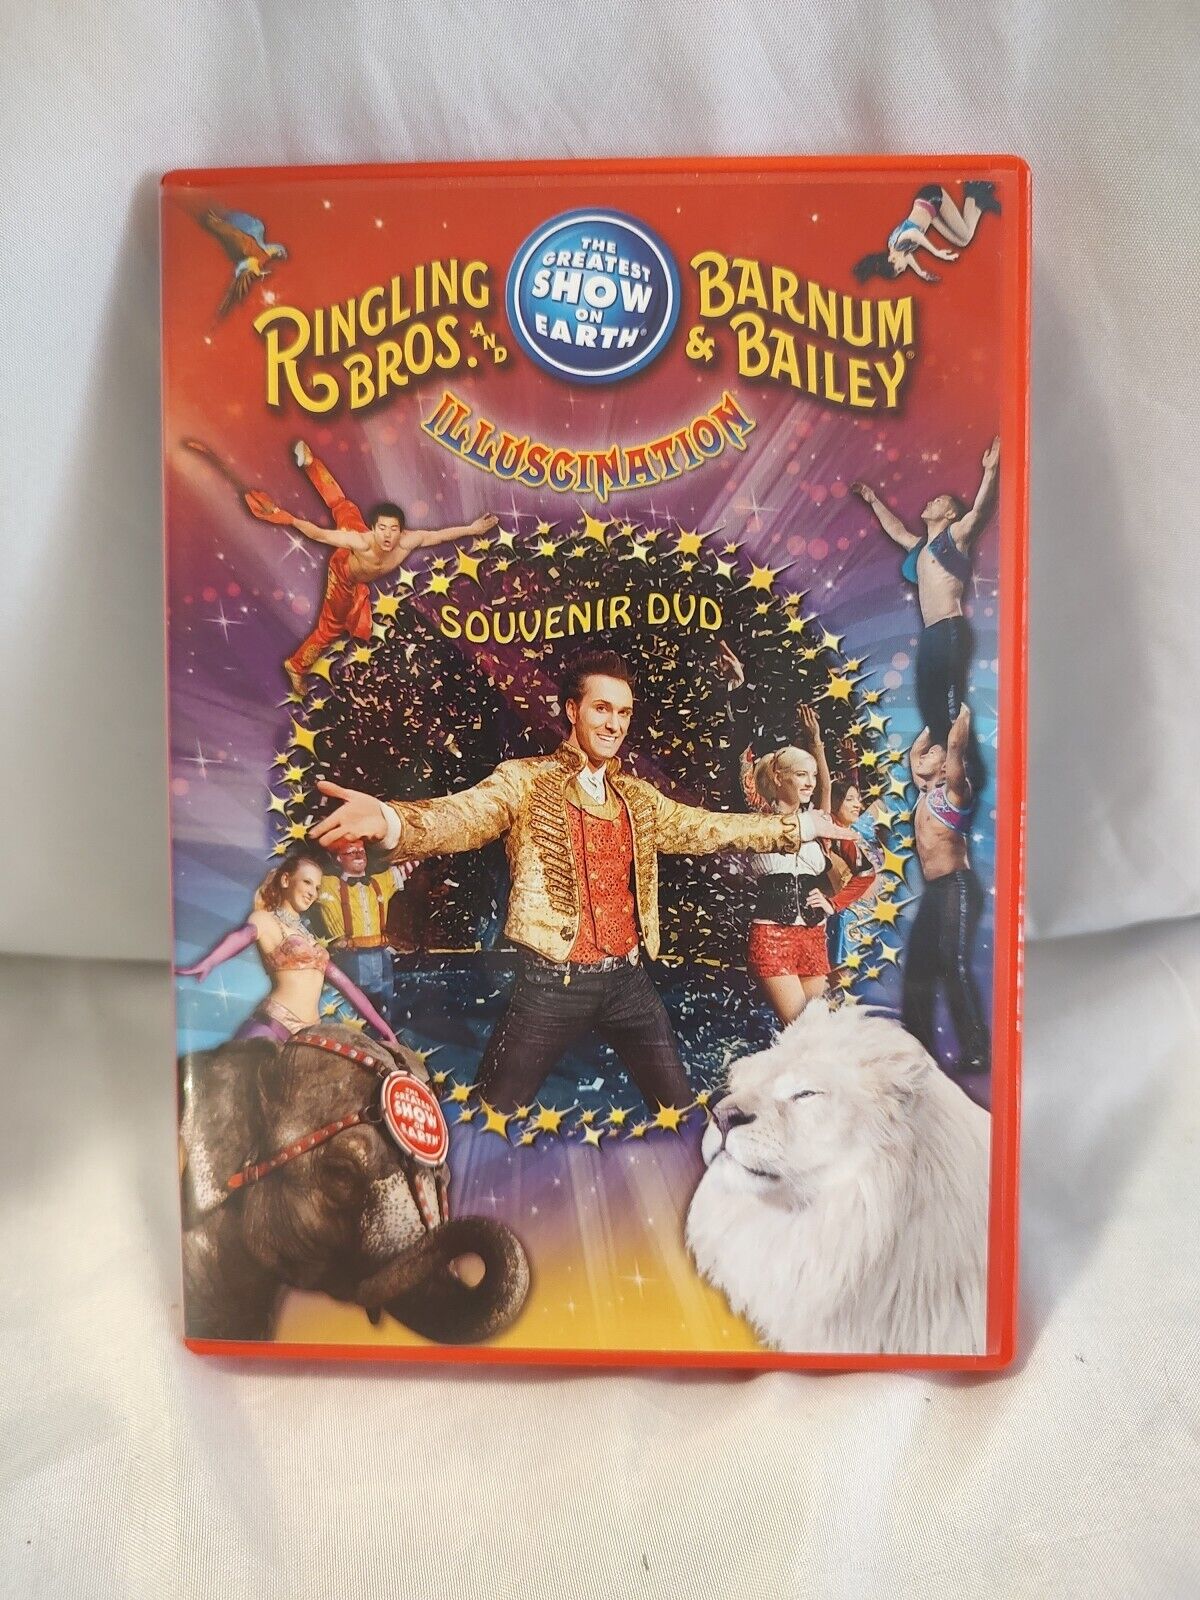 🔥 ILLUSCINATION Souvenir DVD Ringling Bros. and Barnum & Bailey DVD